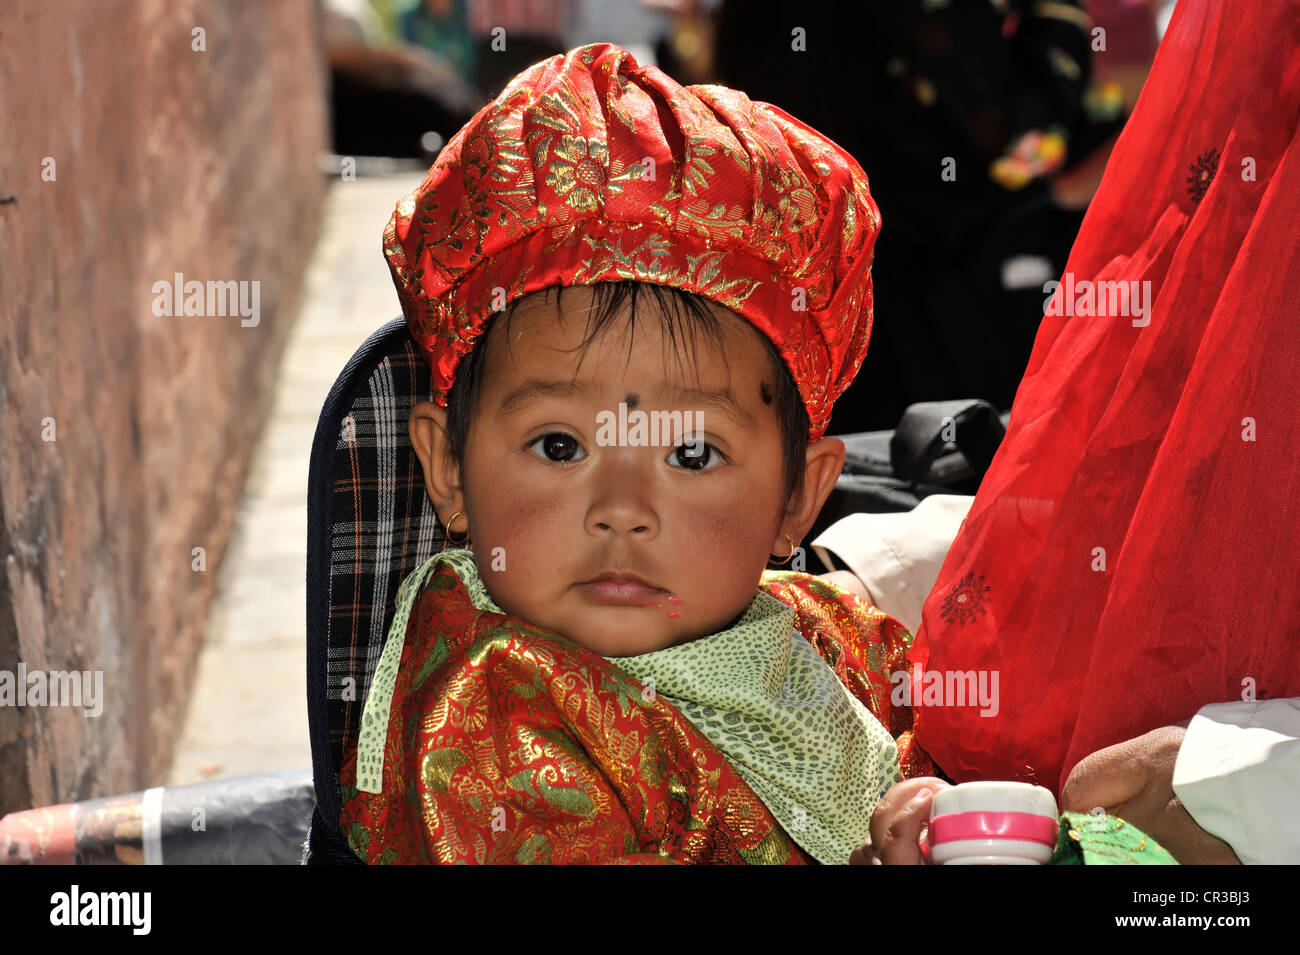 Kleinen nepalesischen jungen in Tracht, Porträt, Kathmandu, Nepal, Asien Stockfoto